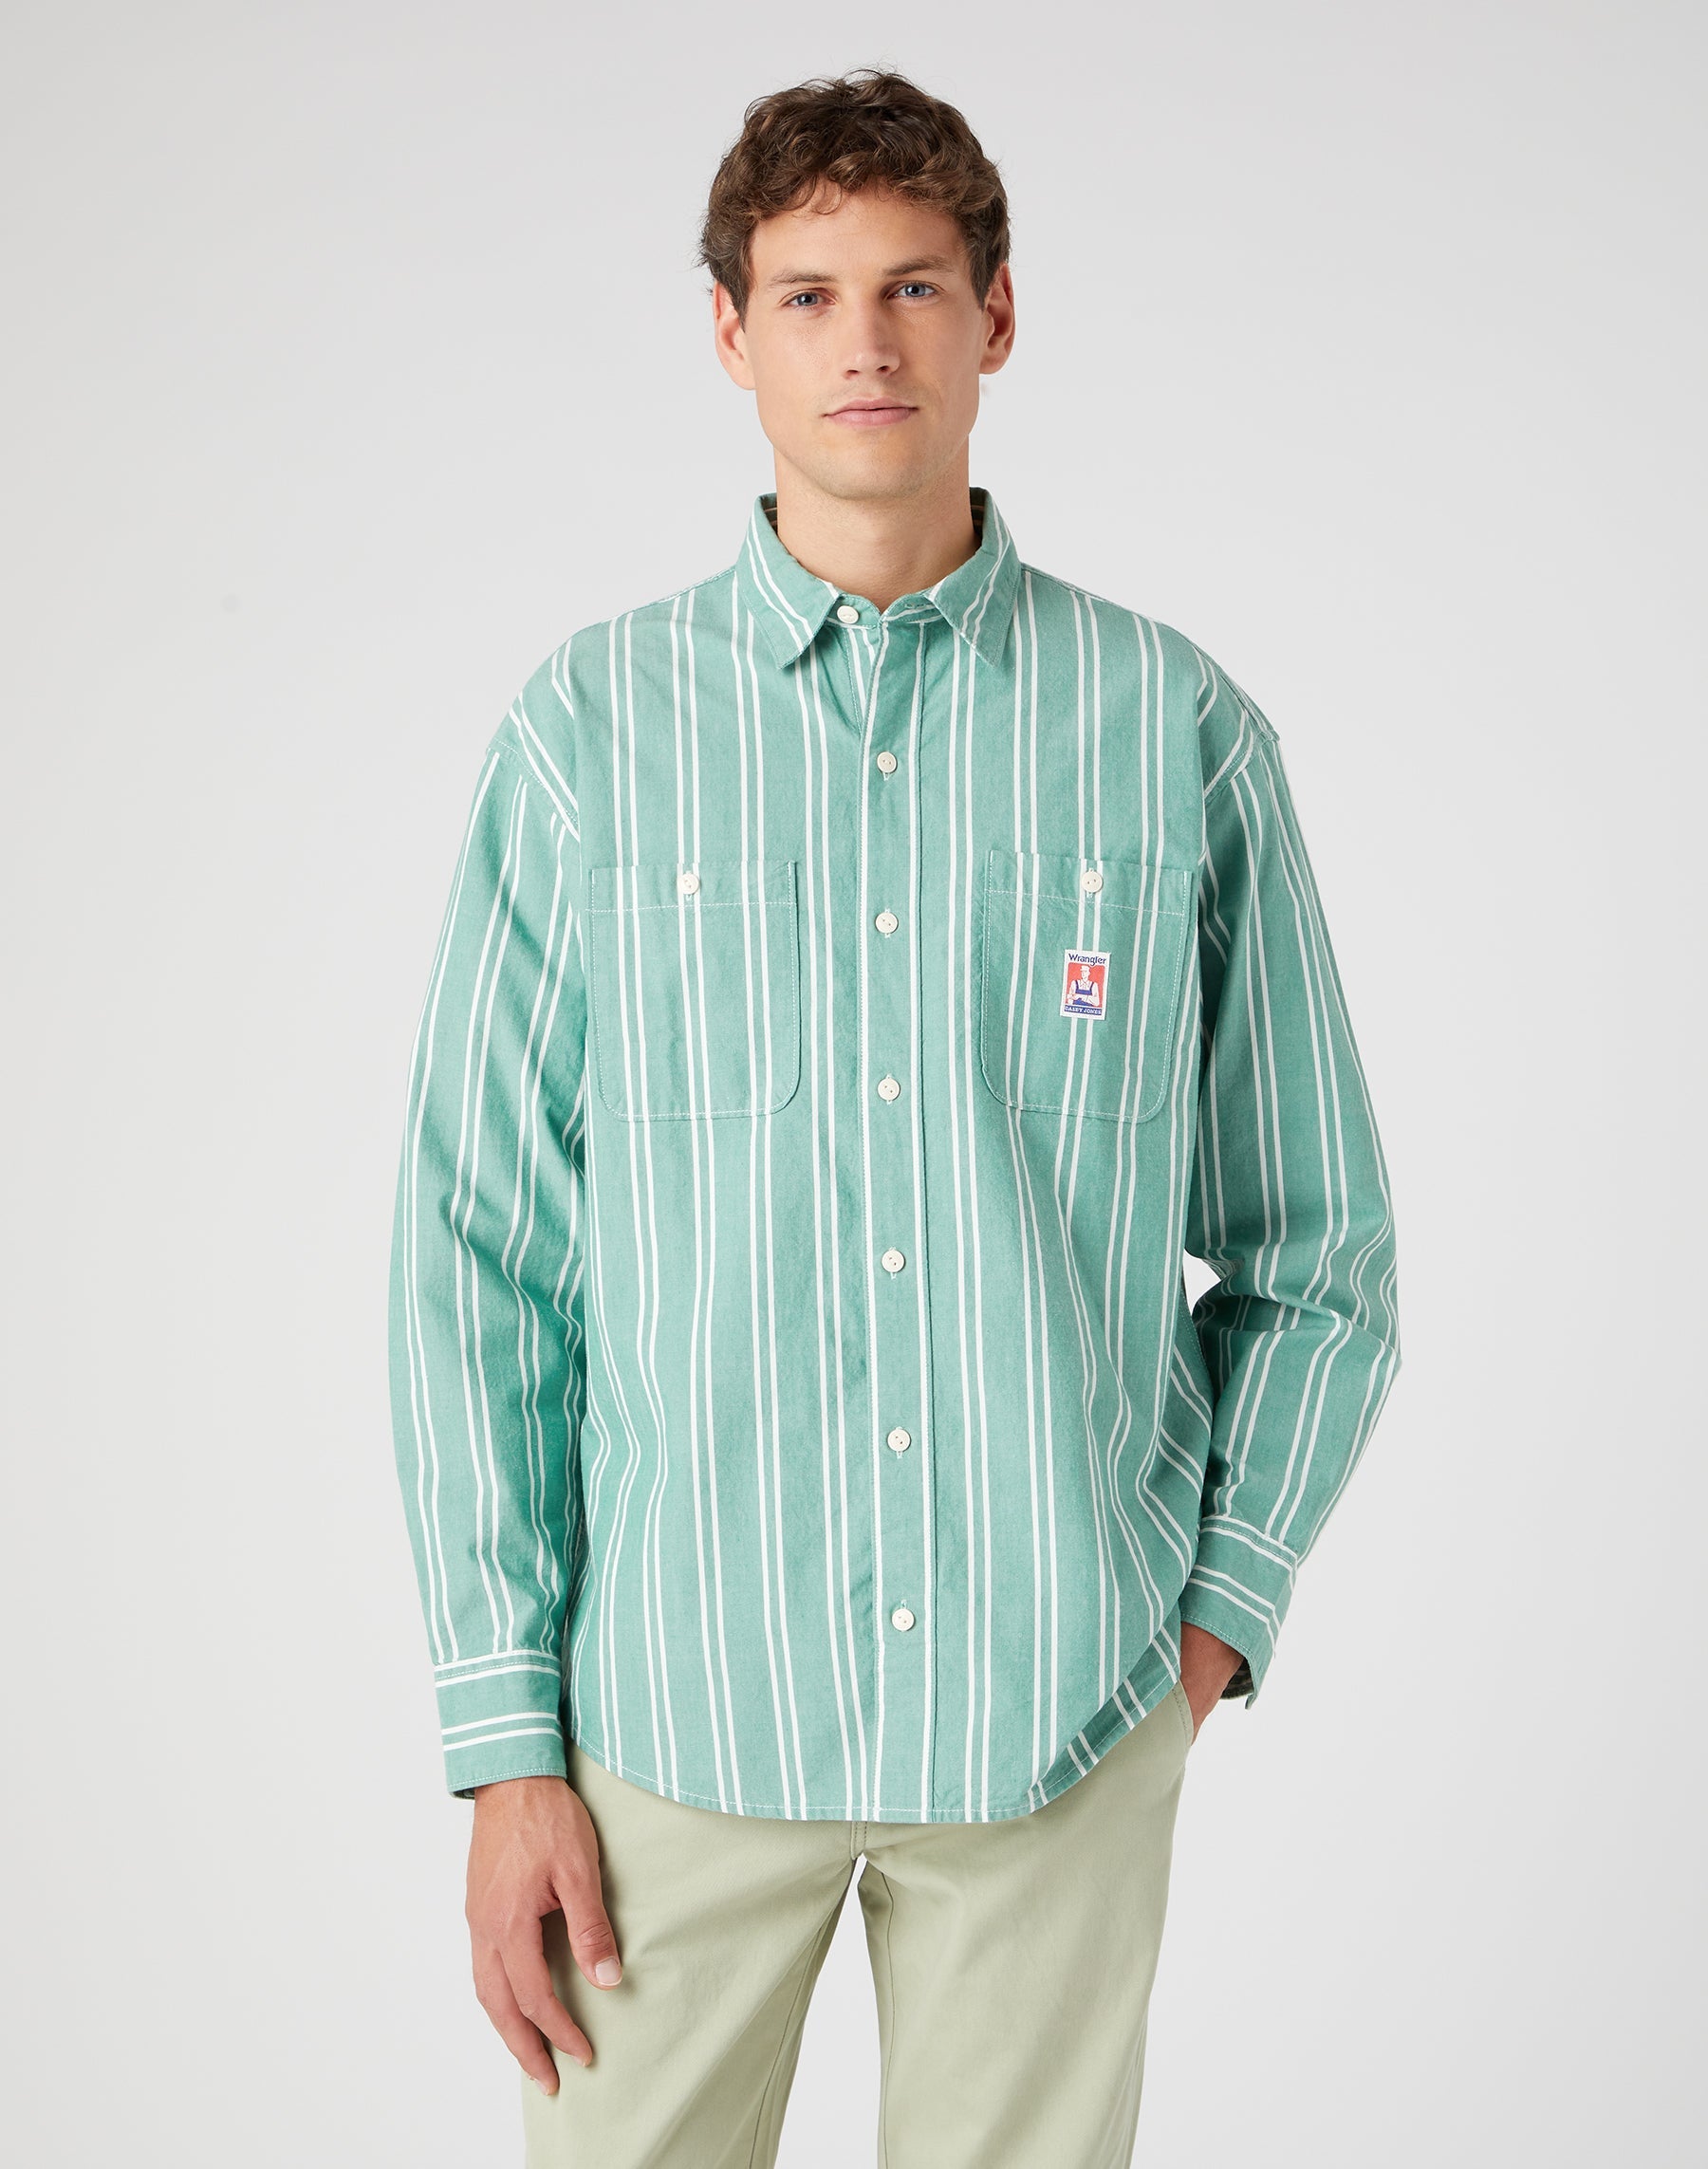 Casey Jones Two Pocket Utility Shirt in Pine Green Hemden Wrangler   